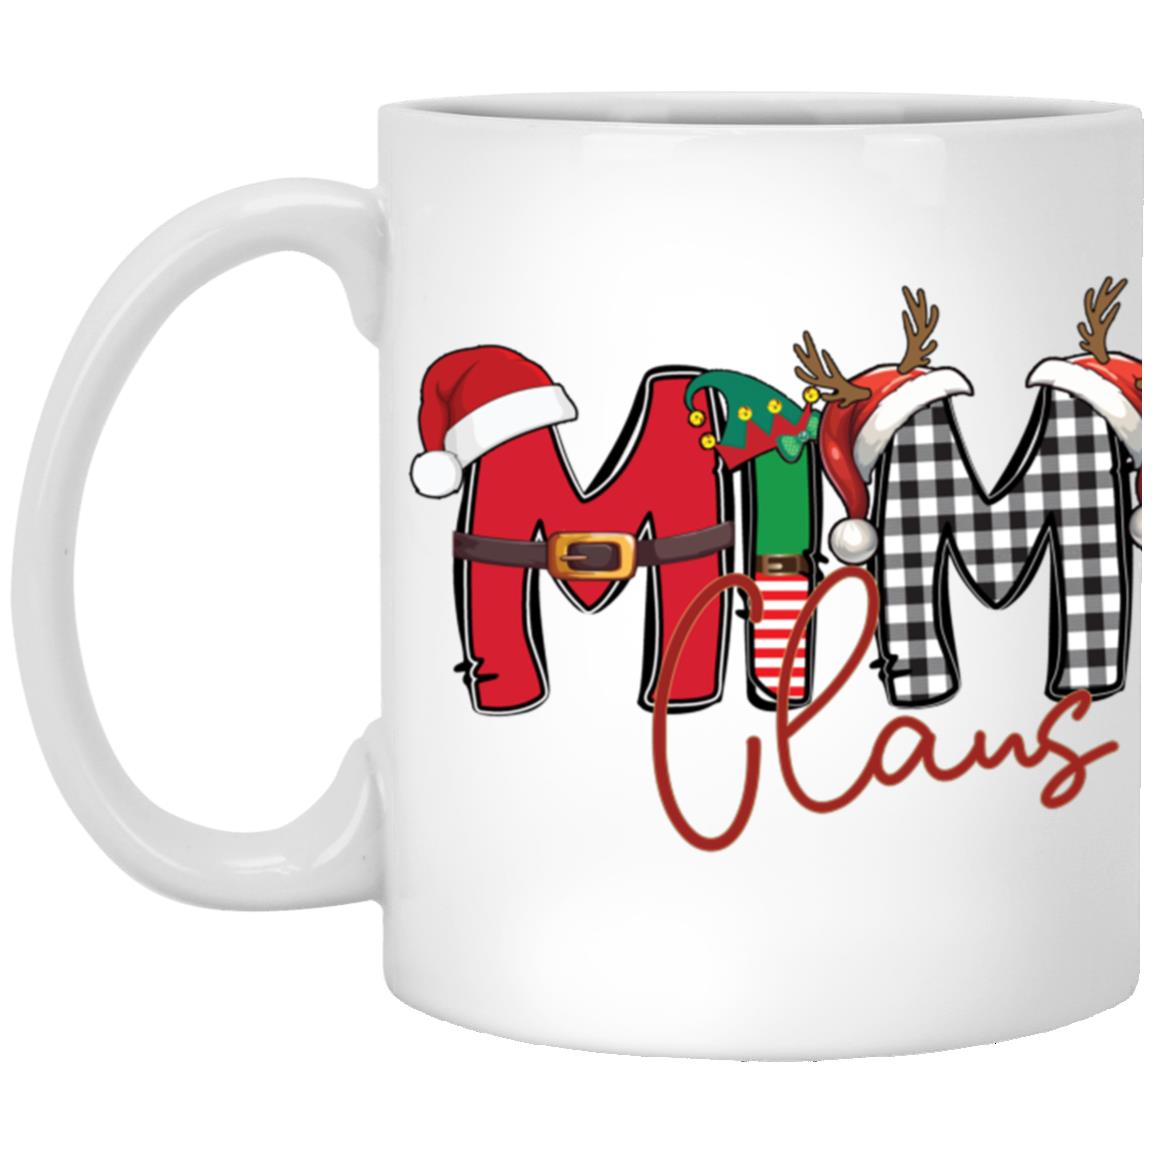 Grandma/Gigi/Mimi/Nana Claus Coffee Mug